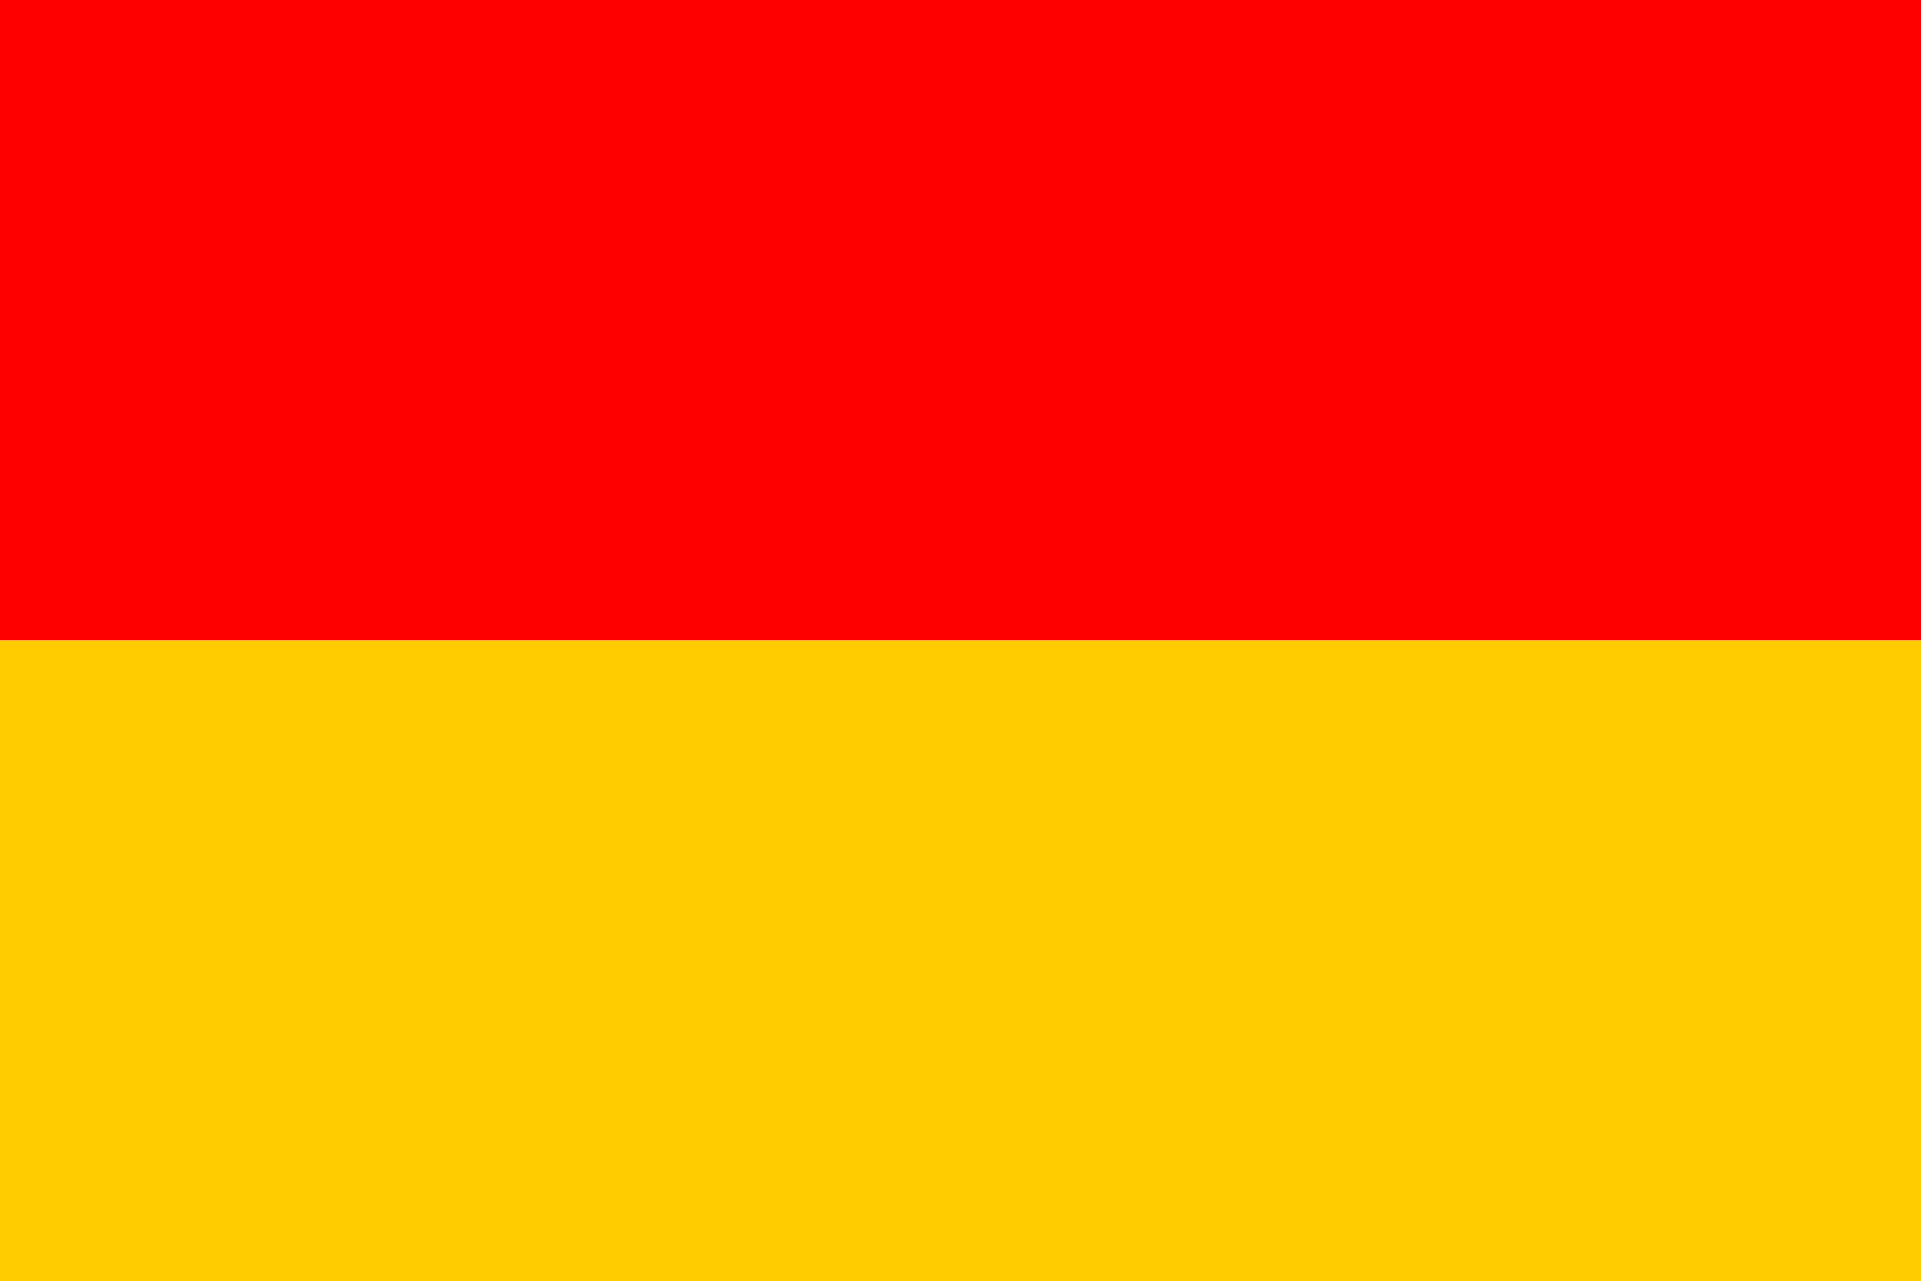 Burgenlandská vlajka | vlajka, prapor, symbol, vlaječka, obrázek | Rakouské země |  1921x1281 px